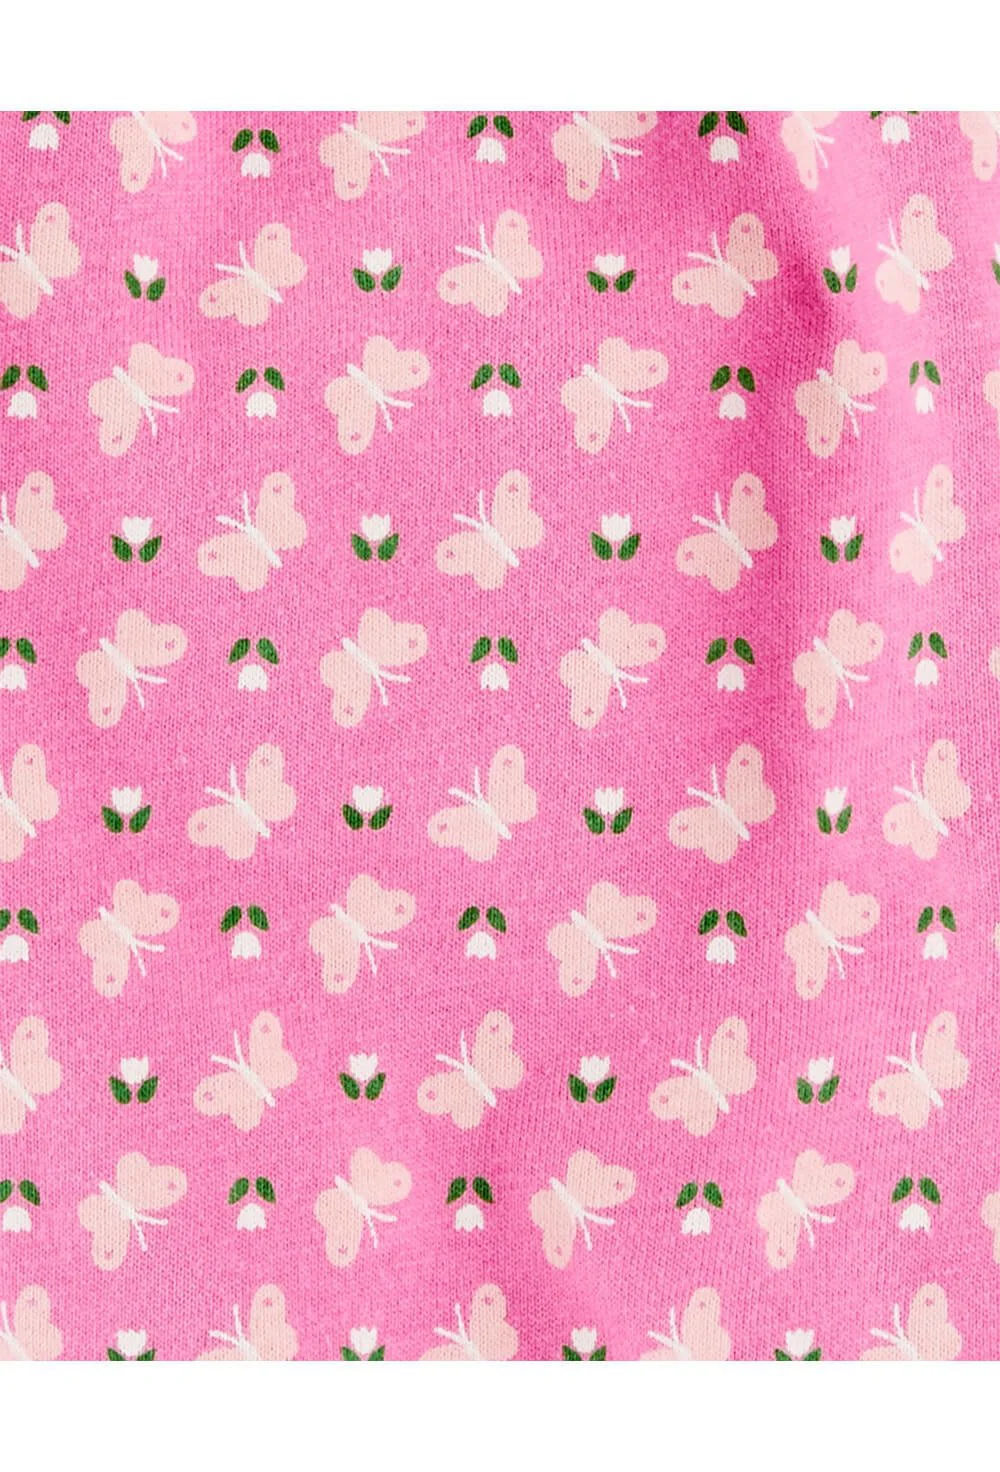 Carter's Летний комбинезон розовый с бабочками